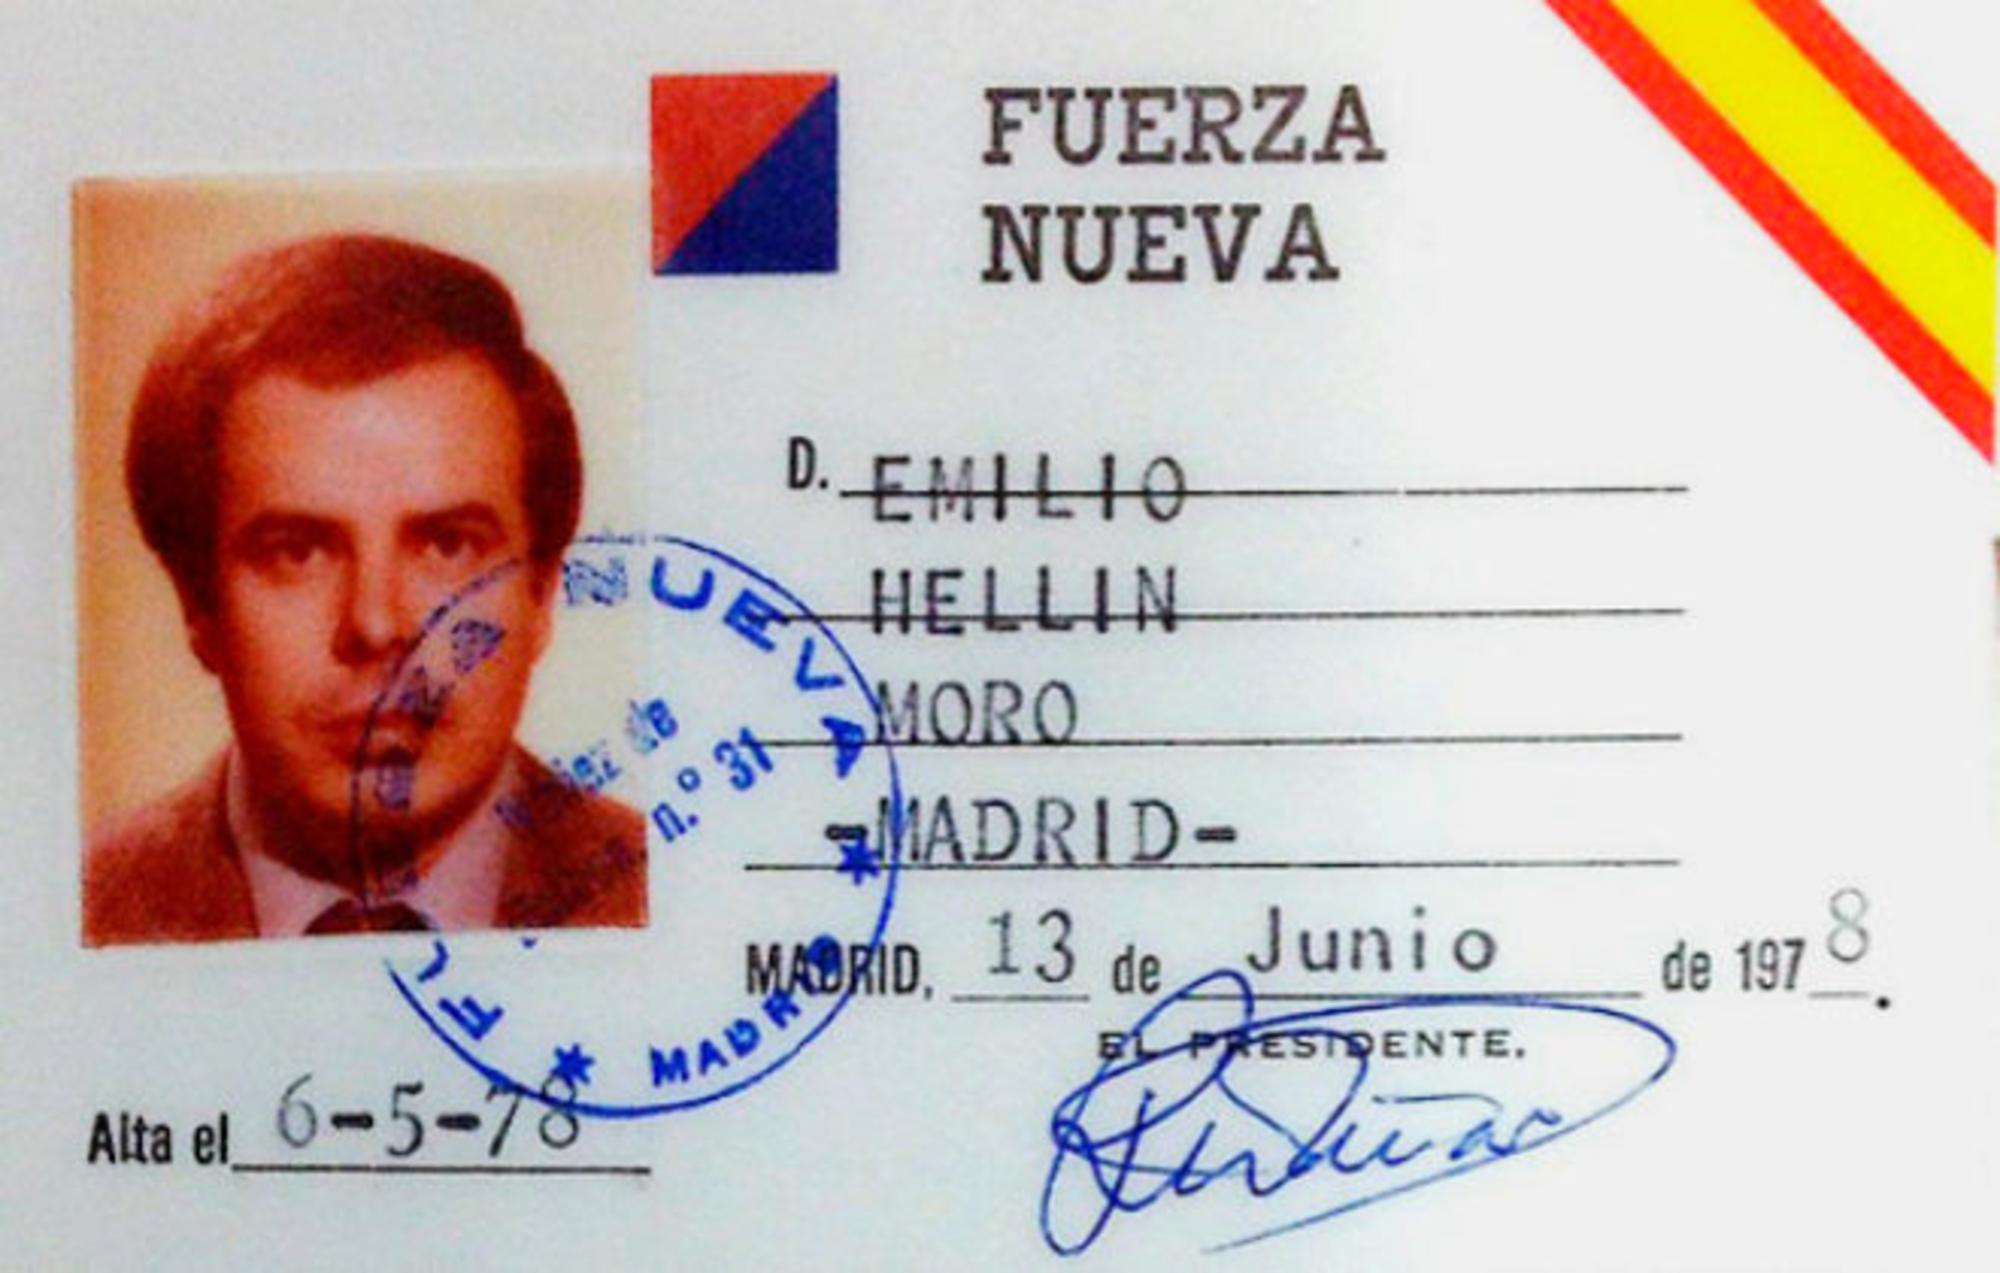 Carnet de Emilio Hellín como militante de Fuerza Nueva